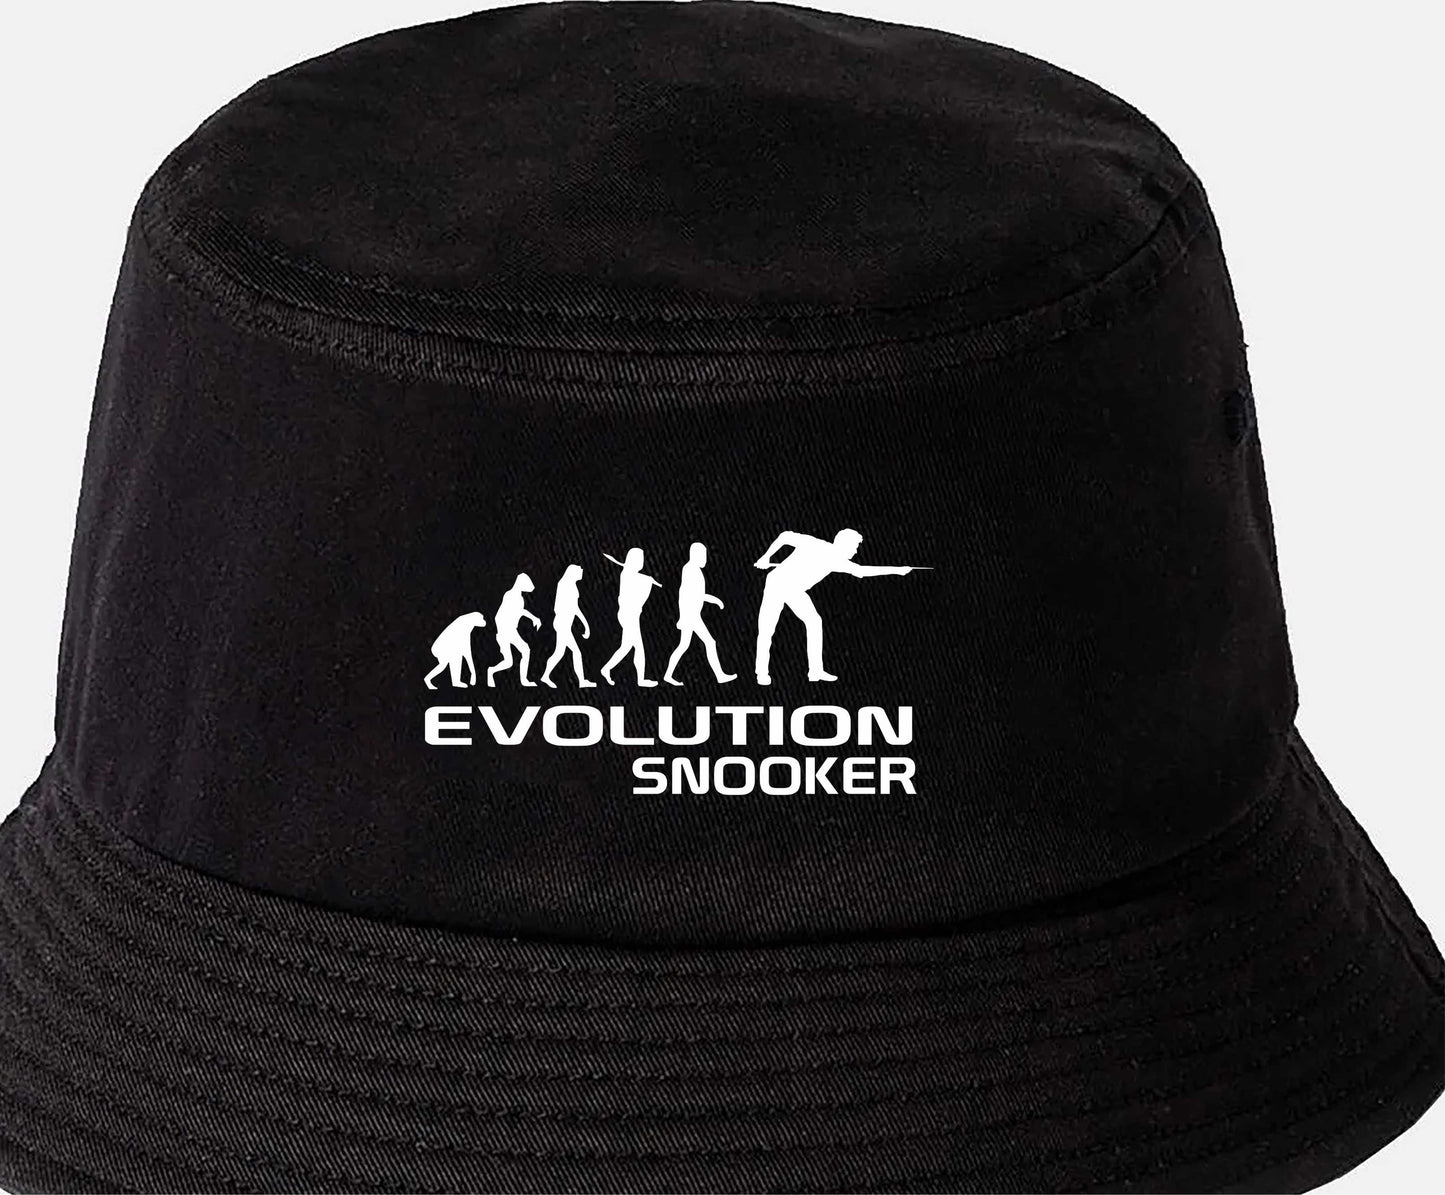 Evolution Of Snooker Bucket Hat Sports Hobbies Gift For Men & Ladies